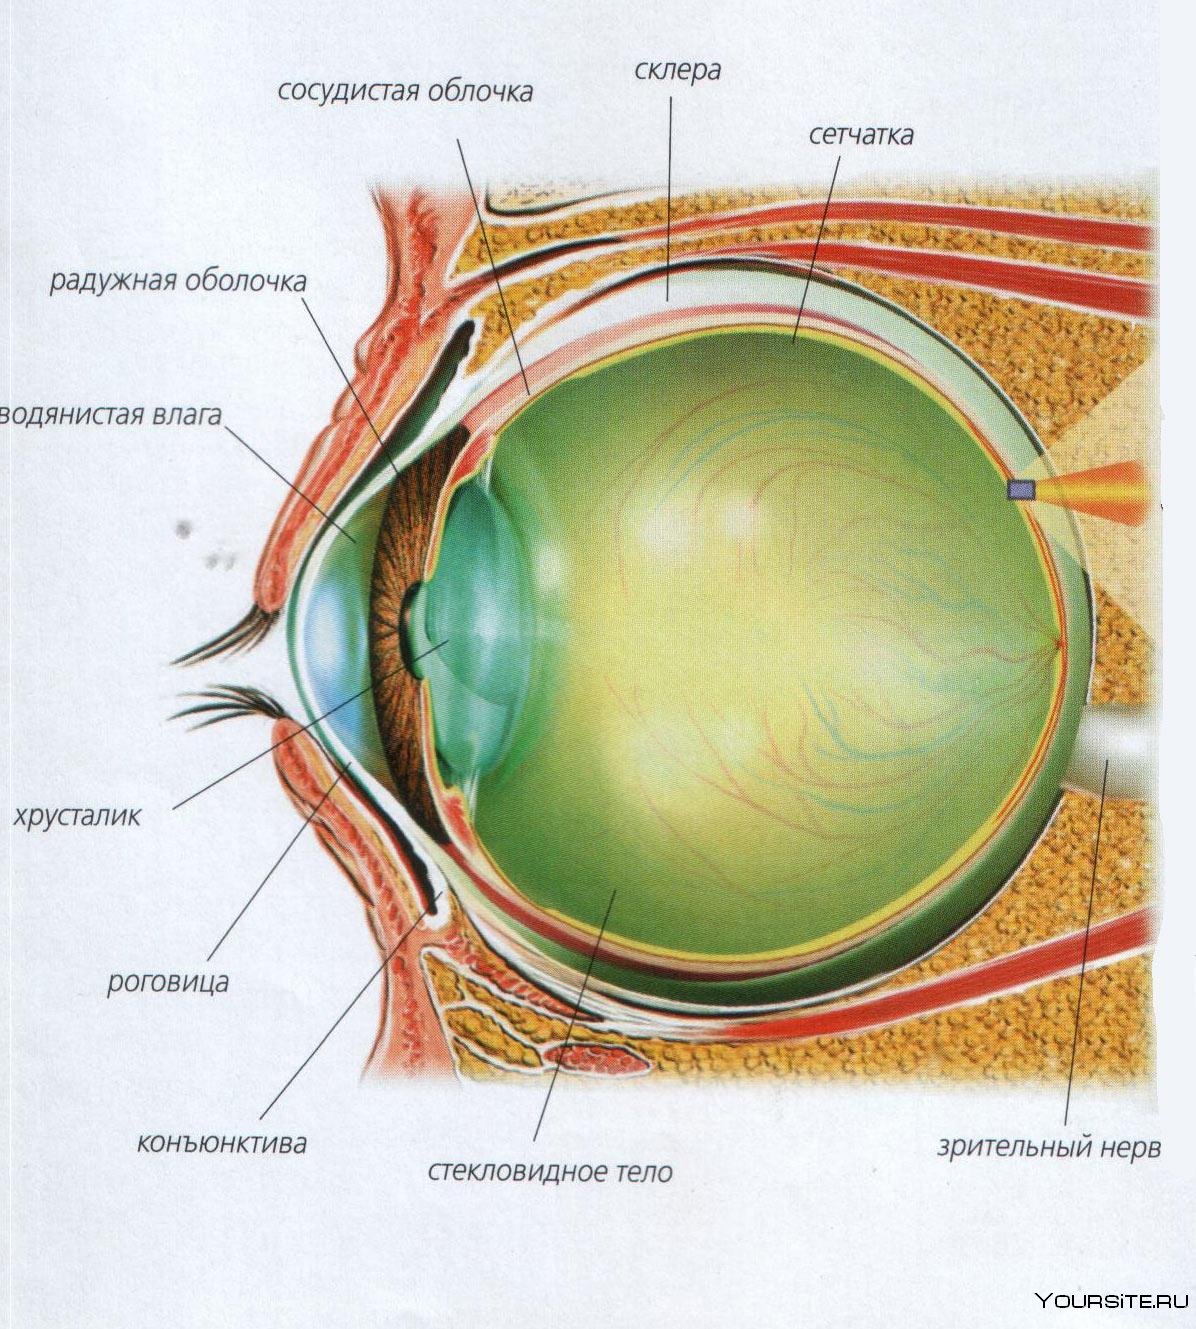 Глазных орбит и зрительных нервов. Строение глазного яблока анатомия. Анатомия глазного яблока и глазницы. Строение зрительного анализатора глазное яблоко. Анатомия глаз роговица и конъюнктива.